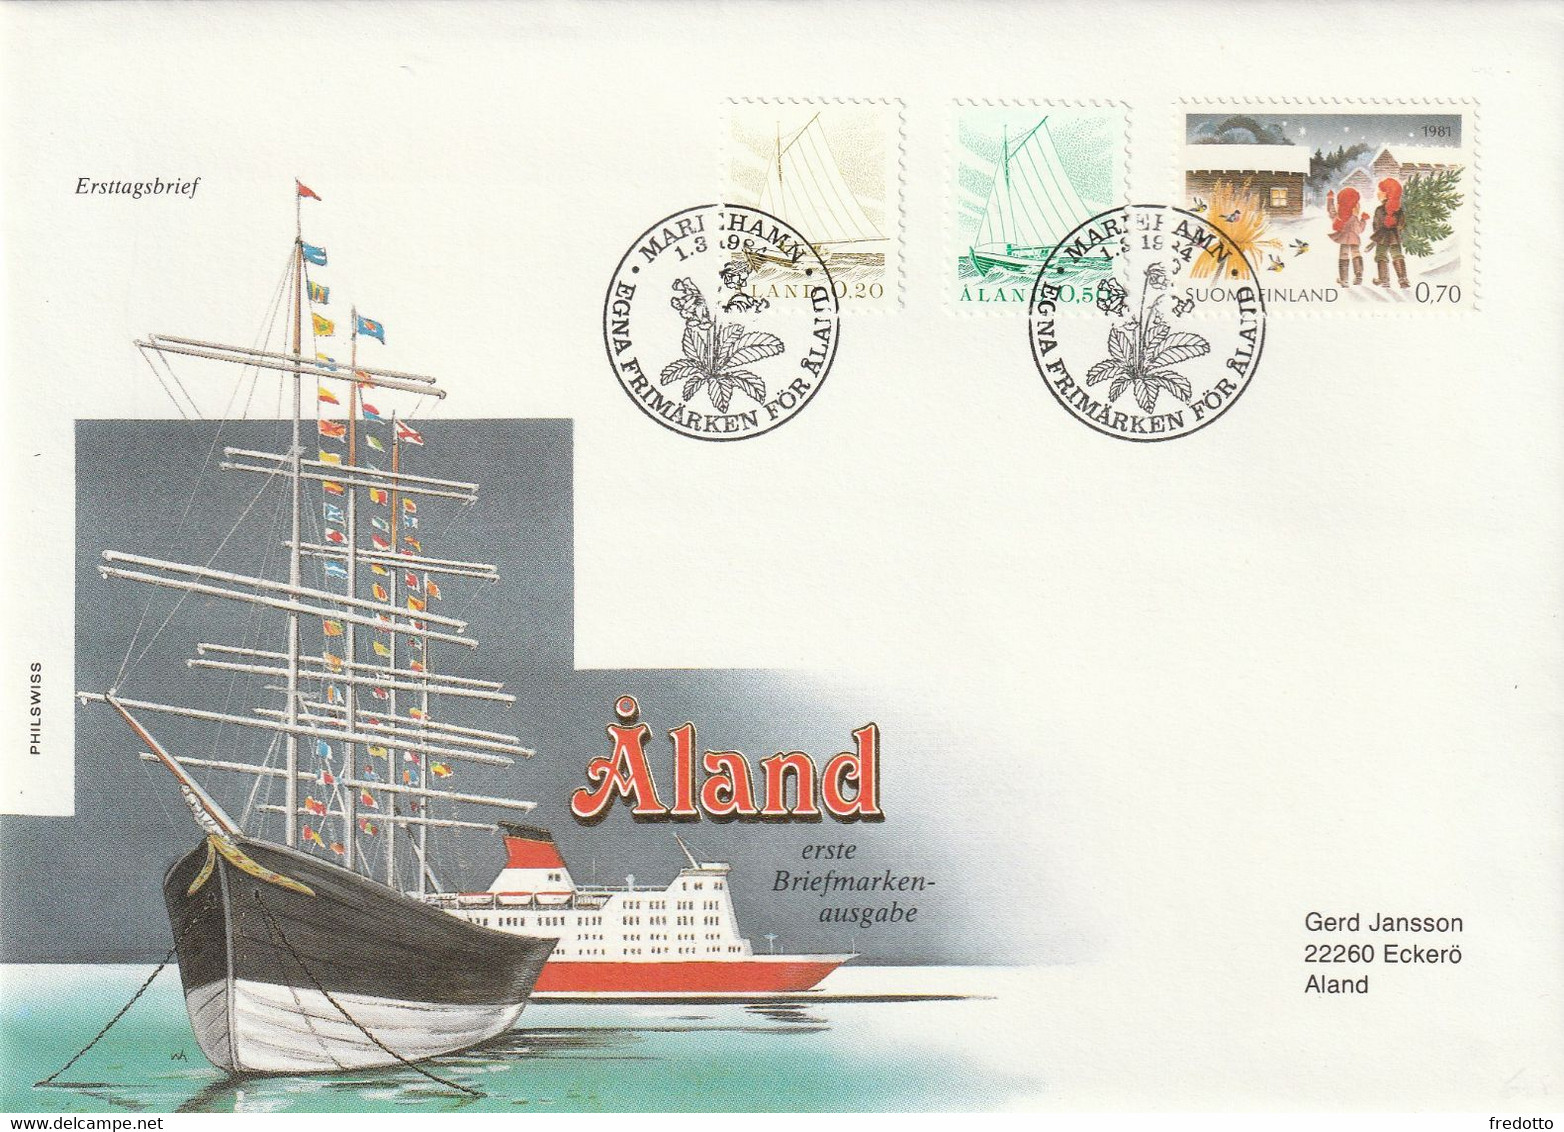 Aland-Finnland-Aland Die Erste Briefmarkenausgabe.-Ersttagsbrief. - Covers & Documents